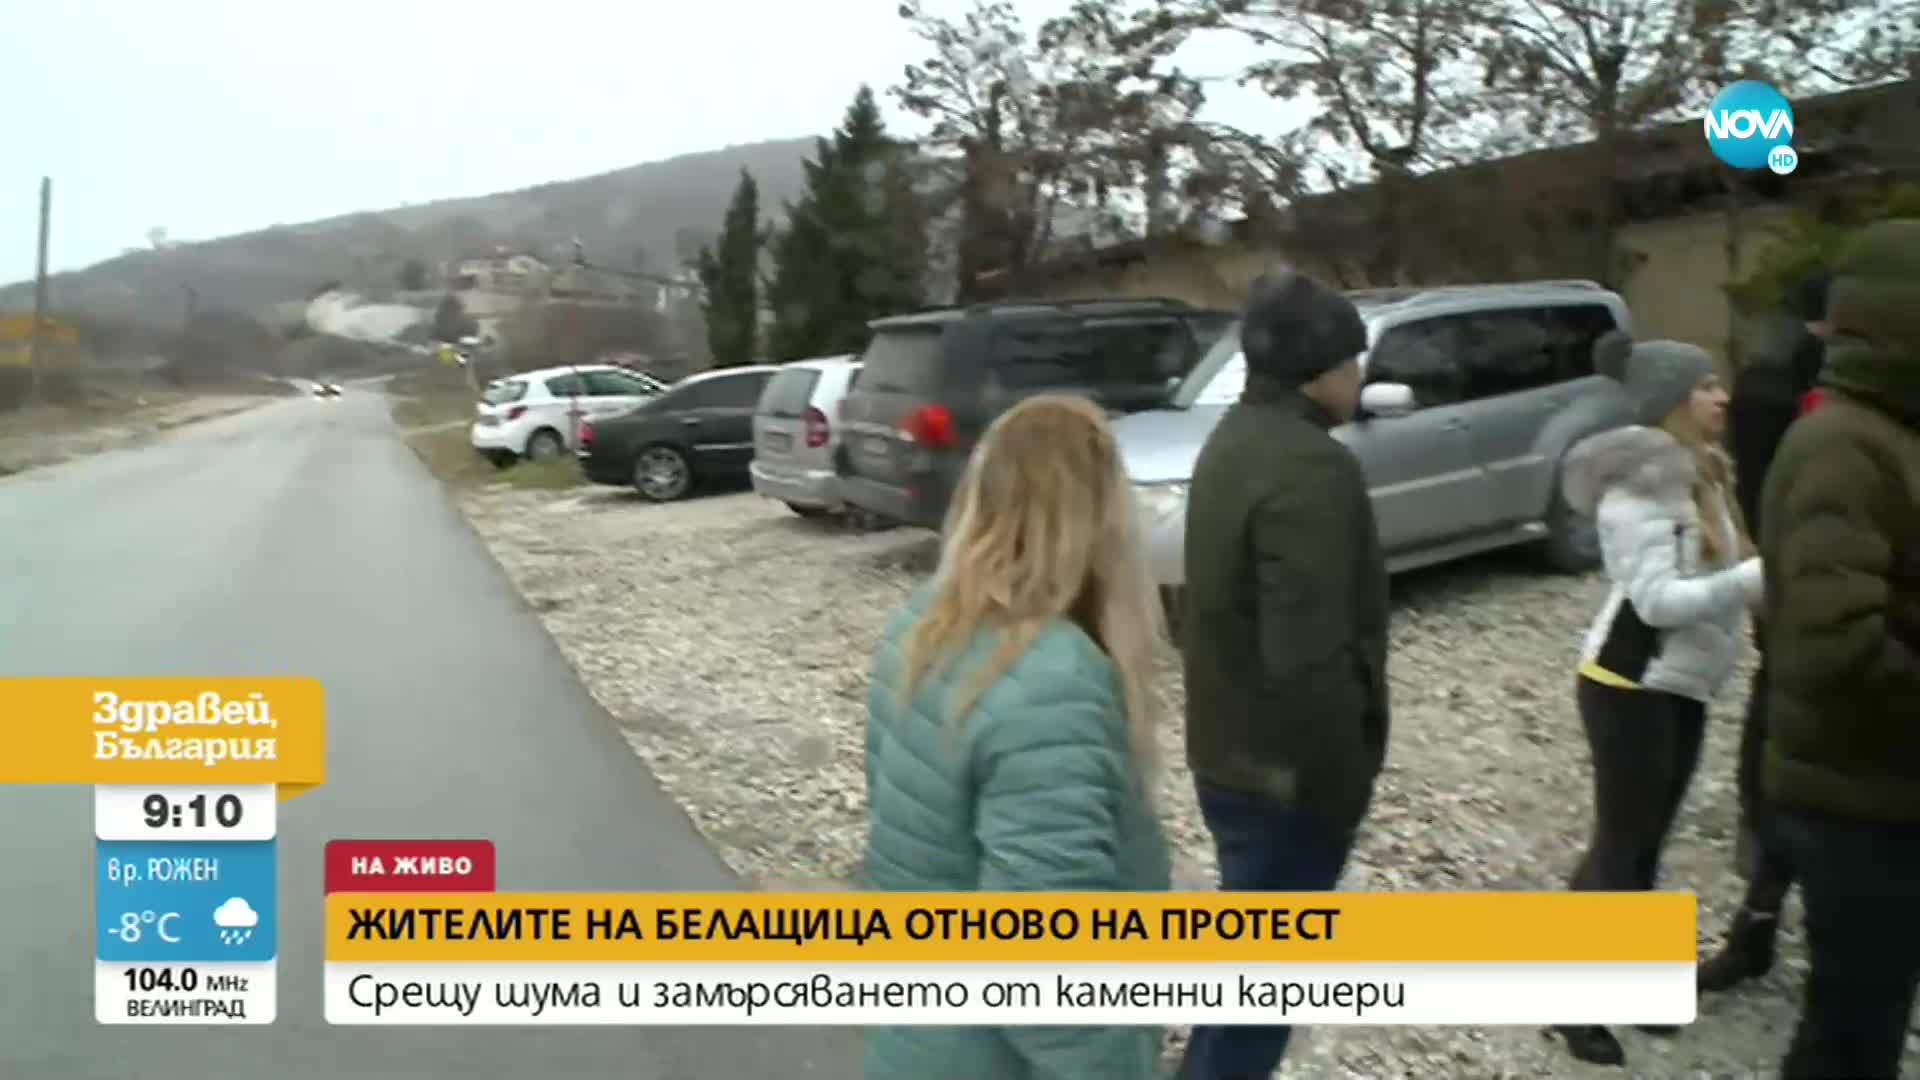 Жители на пловдивско село на протест срещу каменни кариери